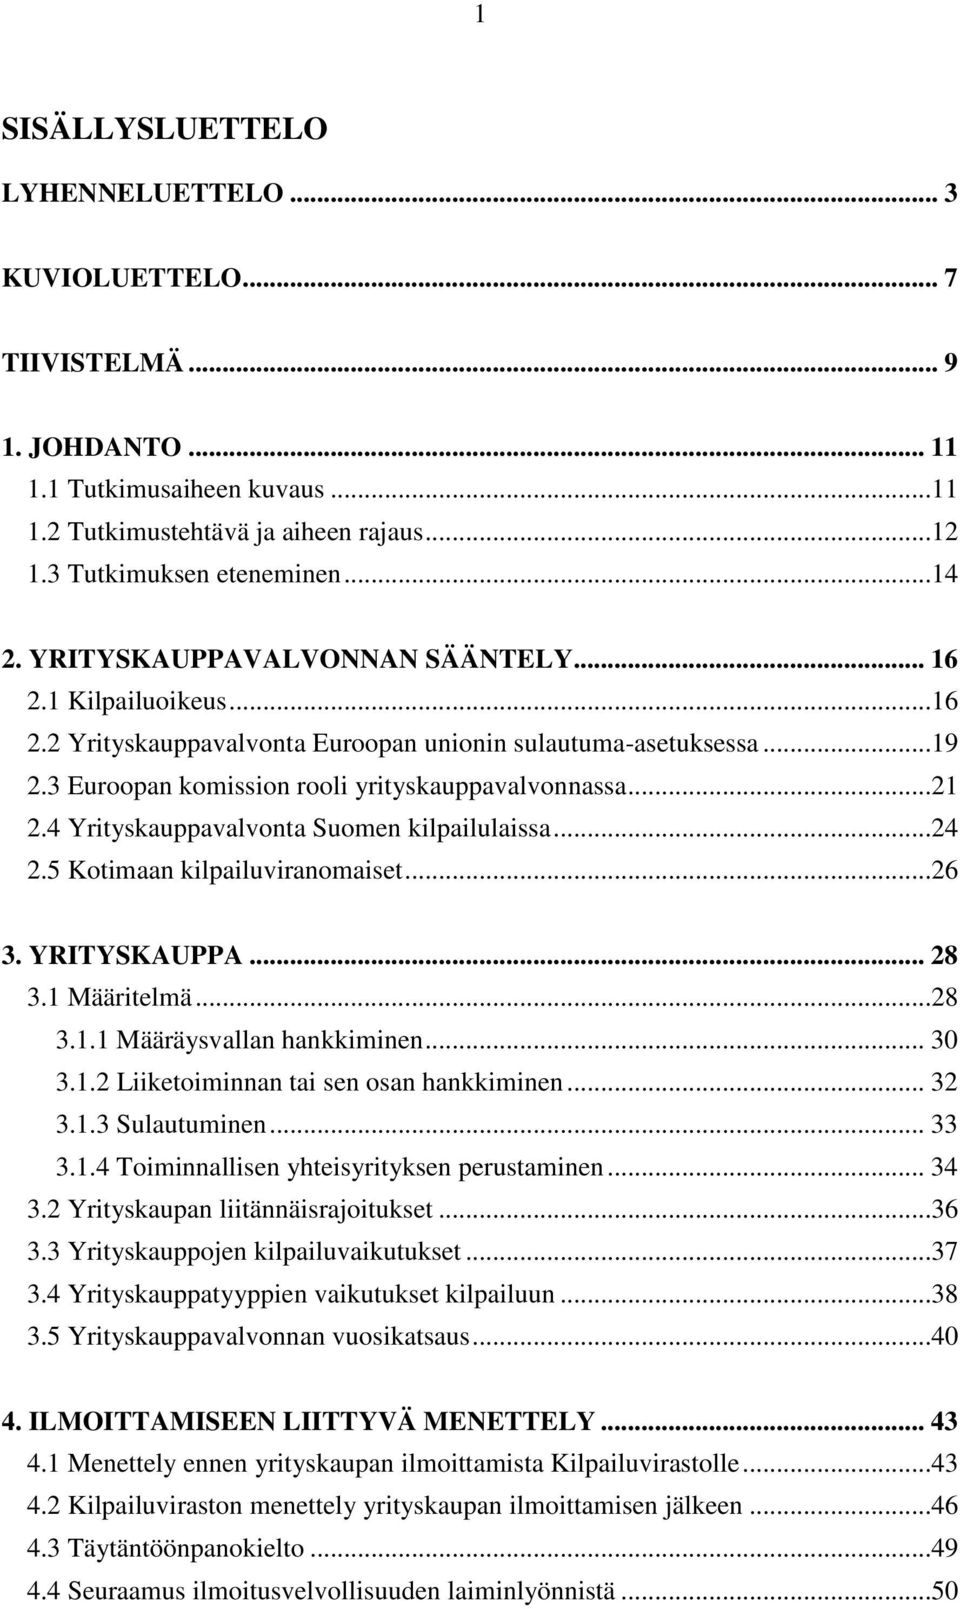 4 Yrityskauppavalvonta Suomen kilpailulaissa...24 2.5 Kotimaan kilpailuviranomaiset...26 3. YRITYSKAUPPA... 28 3.1 Määritelmä...28 3.1.1 Määräysvallan hankkiminen... 30 3.1.2 Liiketoiminnan tai sen osan hankkiminen.